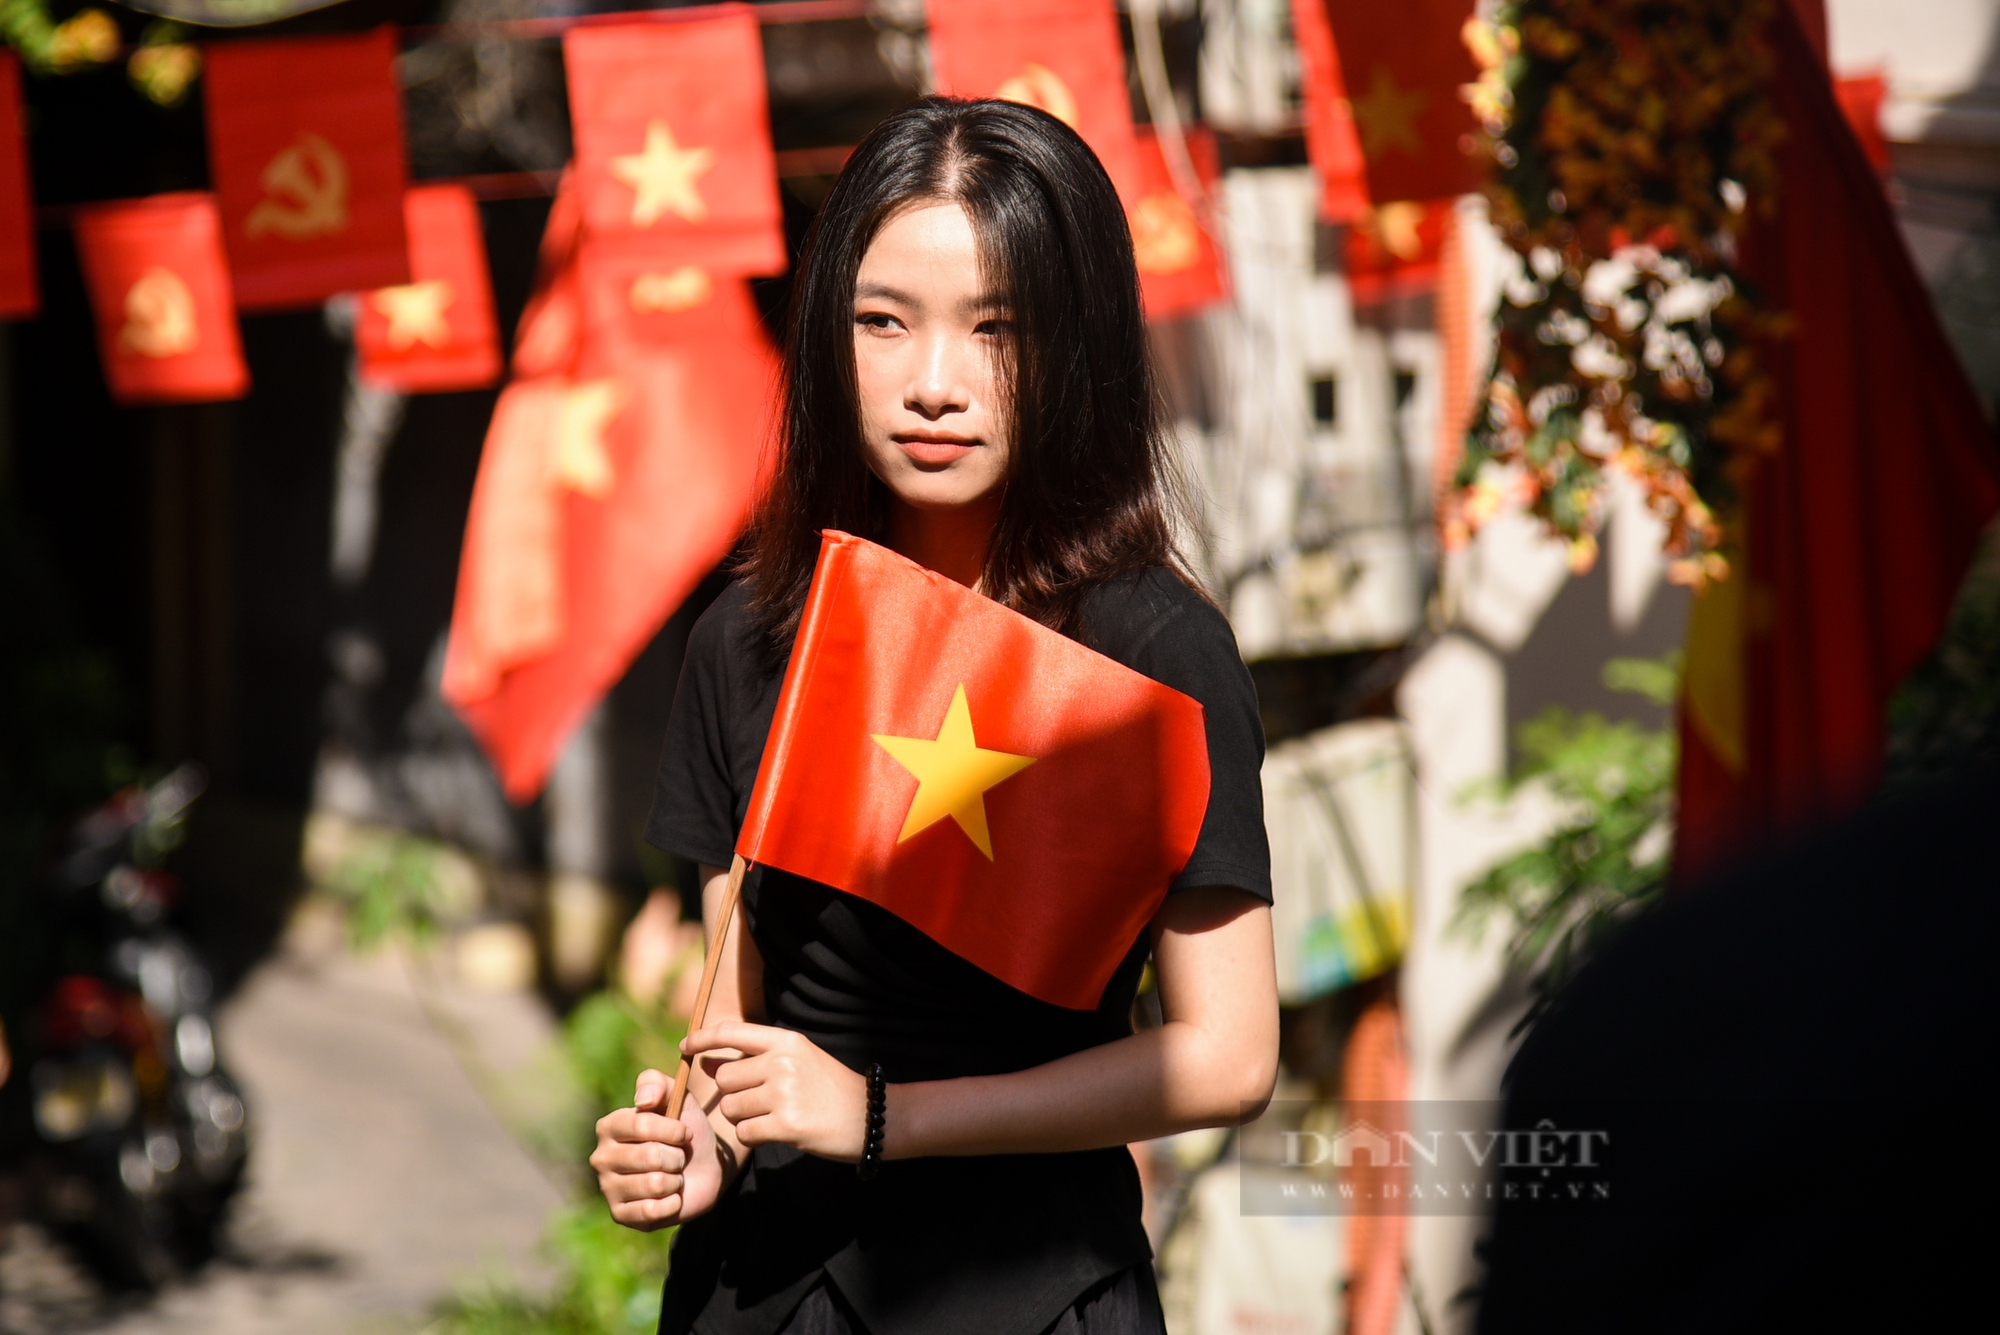 Giới trẻ kéo nhau đến check-in tại ngõ cờ hoa ở Hà Nội vào dịp lễ Quốc khánh 2/9 - Ảnh 8.